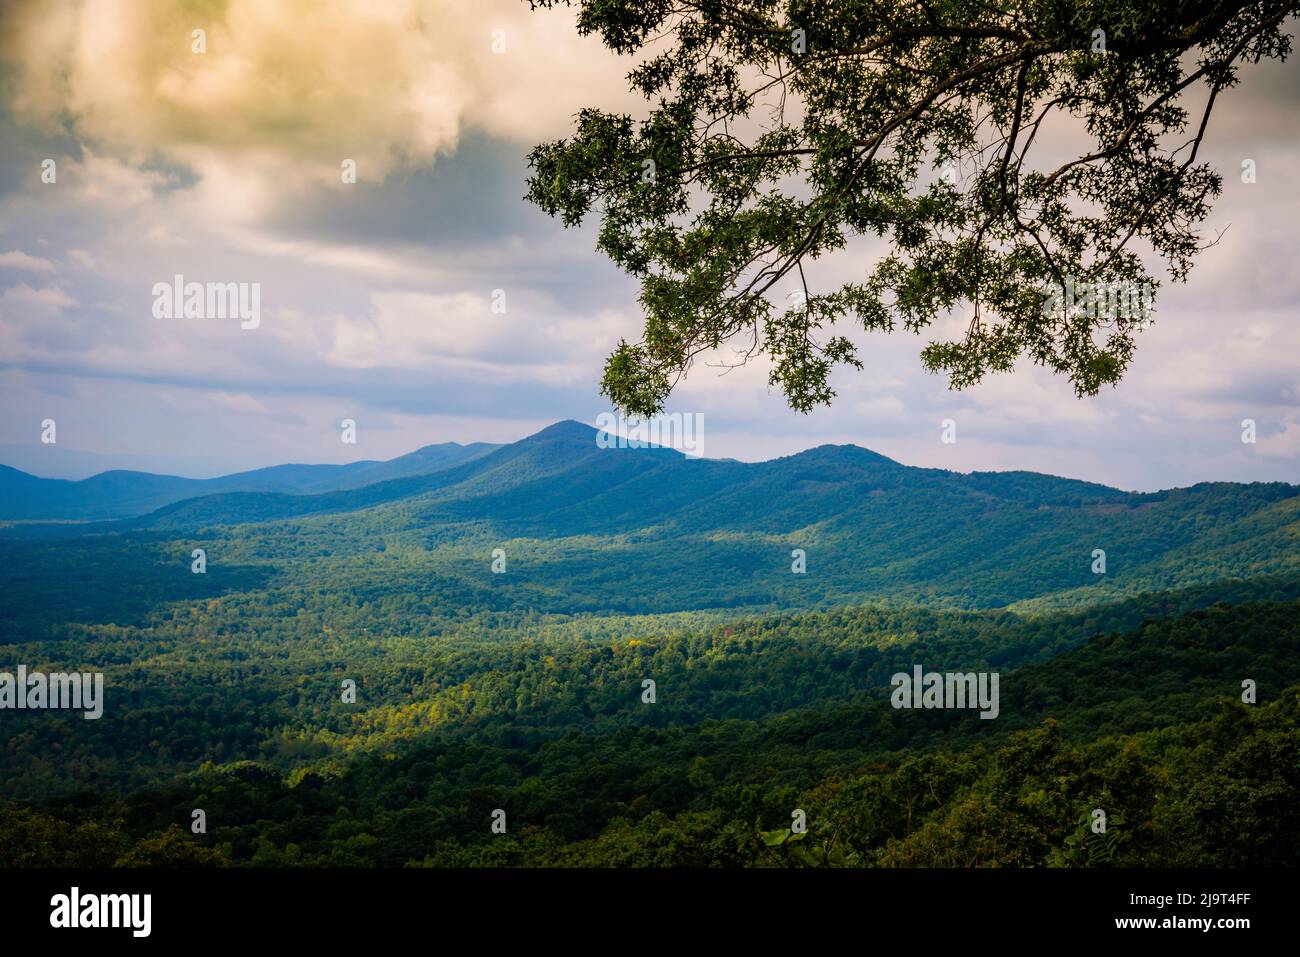 Vista desde Blue Ridge Parkway, Smoky Mountains, Estados Unidos. Foto de stock